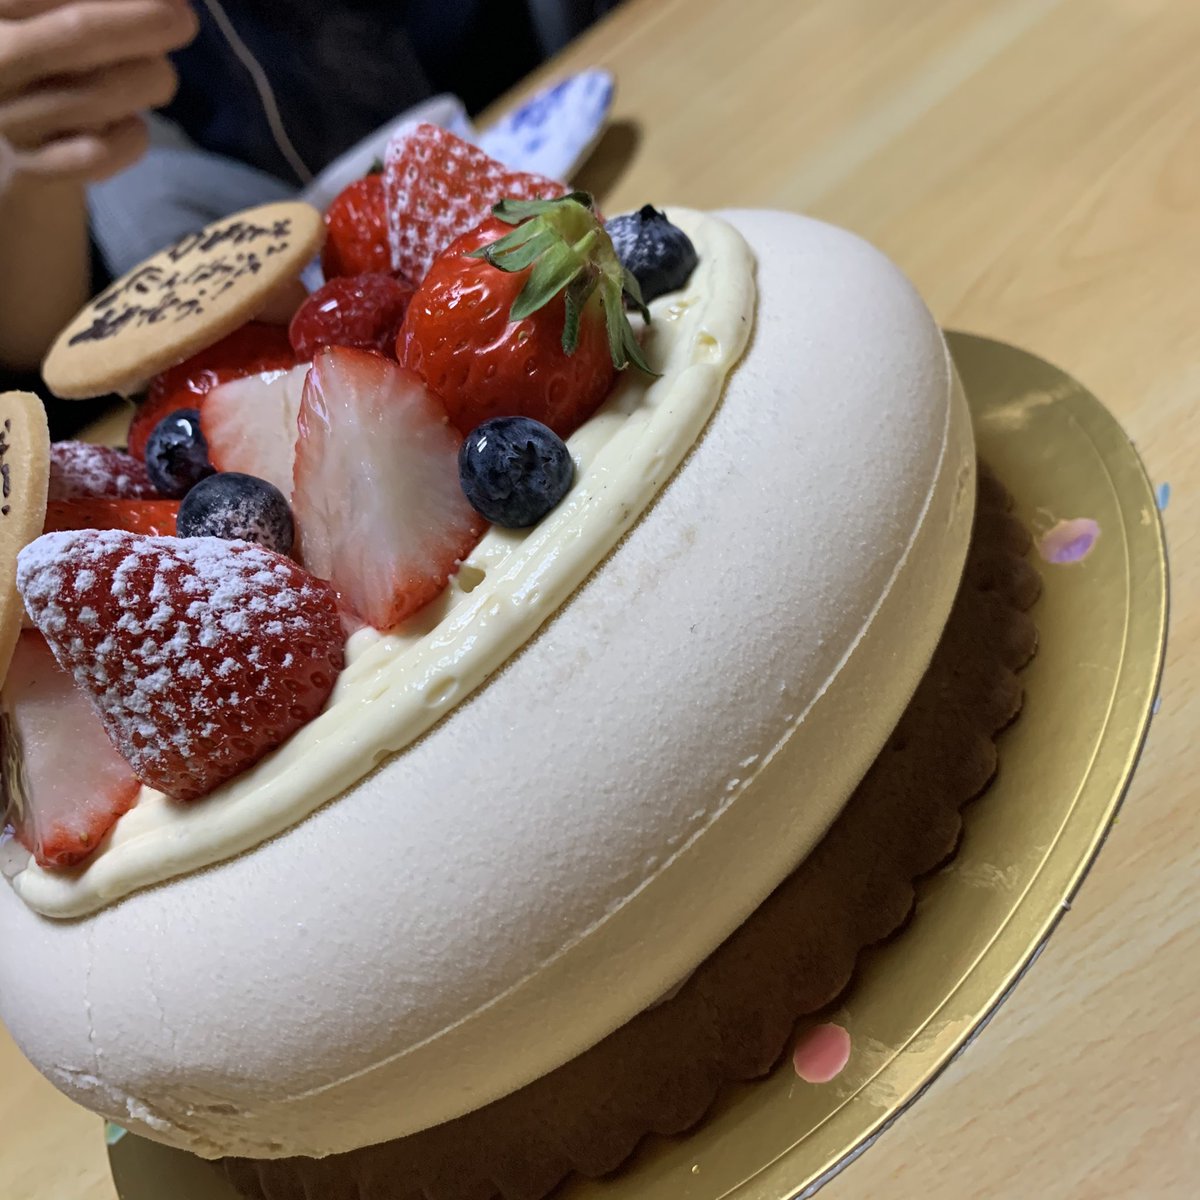 Ir広島 チーム広島 On Twitter 誕生日ケーキですが ストーン の形に作ってくださいました ジャスミン茶のクリームに ベリーとキャラメルナッツのクランチクッキーの層になっていて 最高に美味しいケーキでした セレステさんありがとうございました